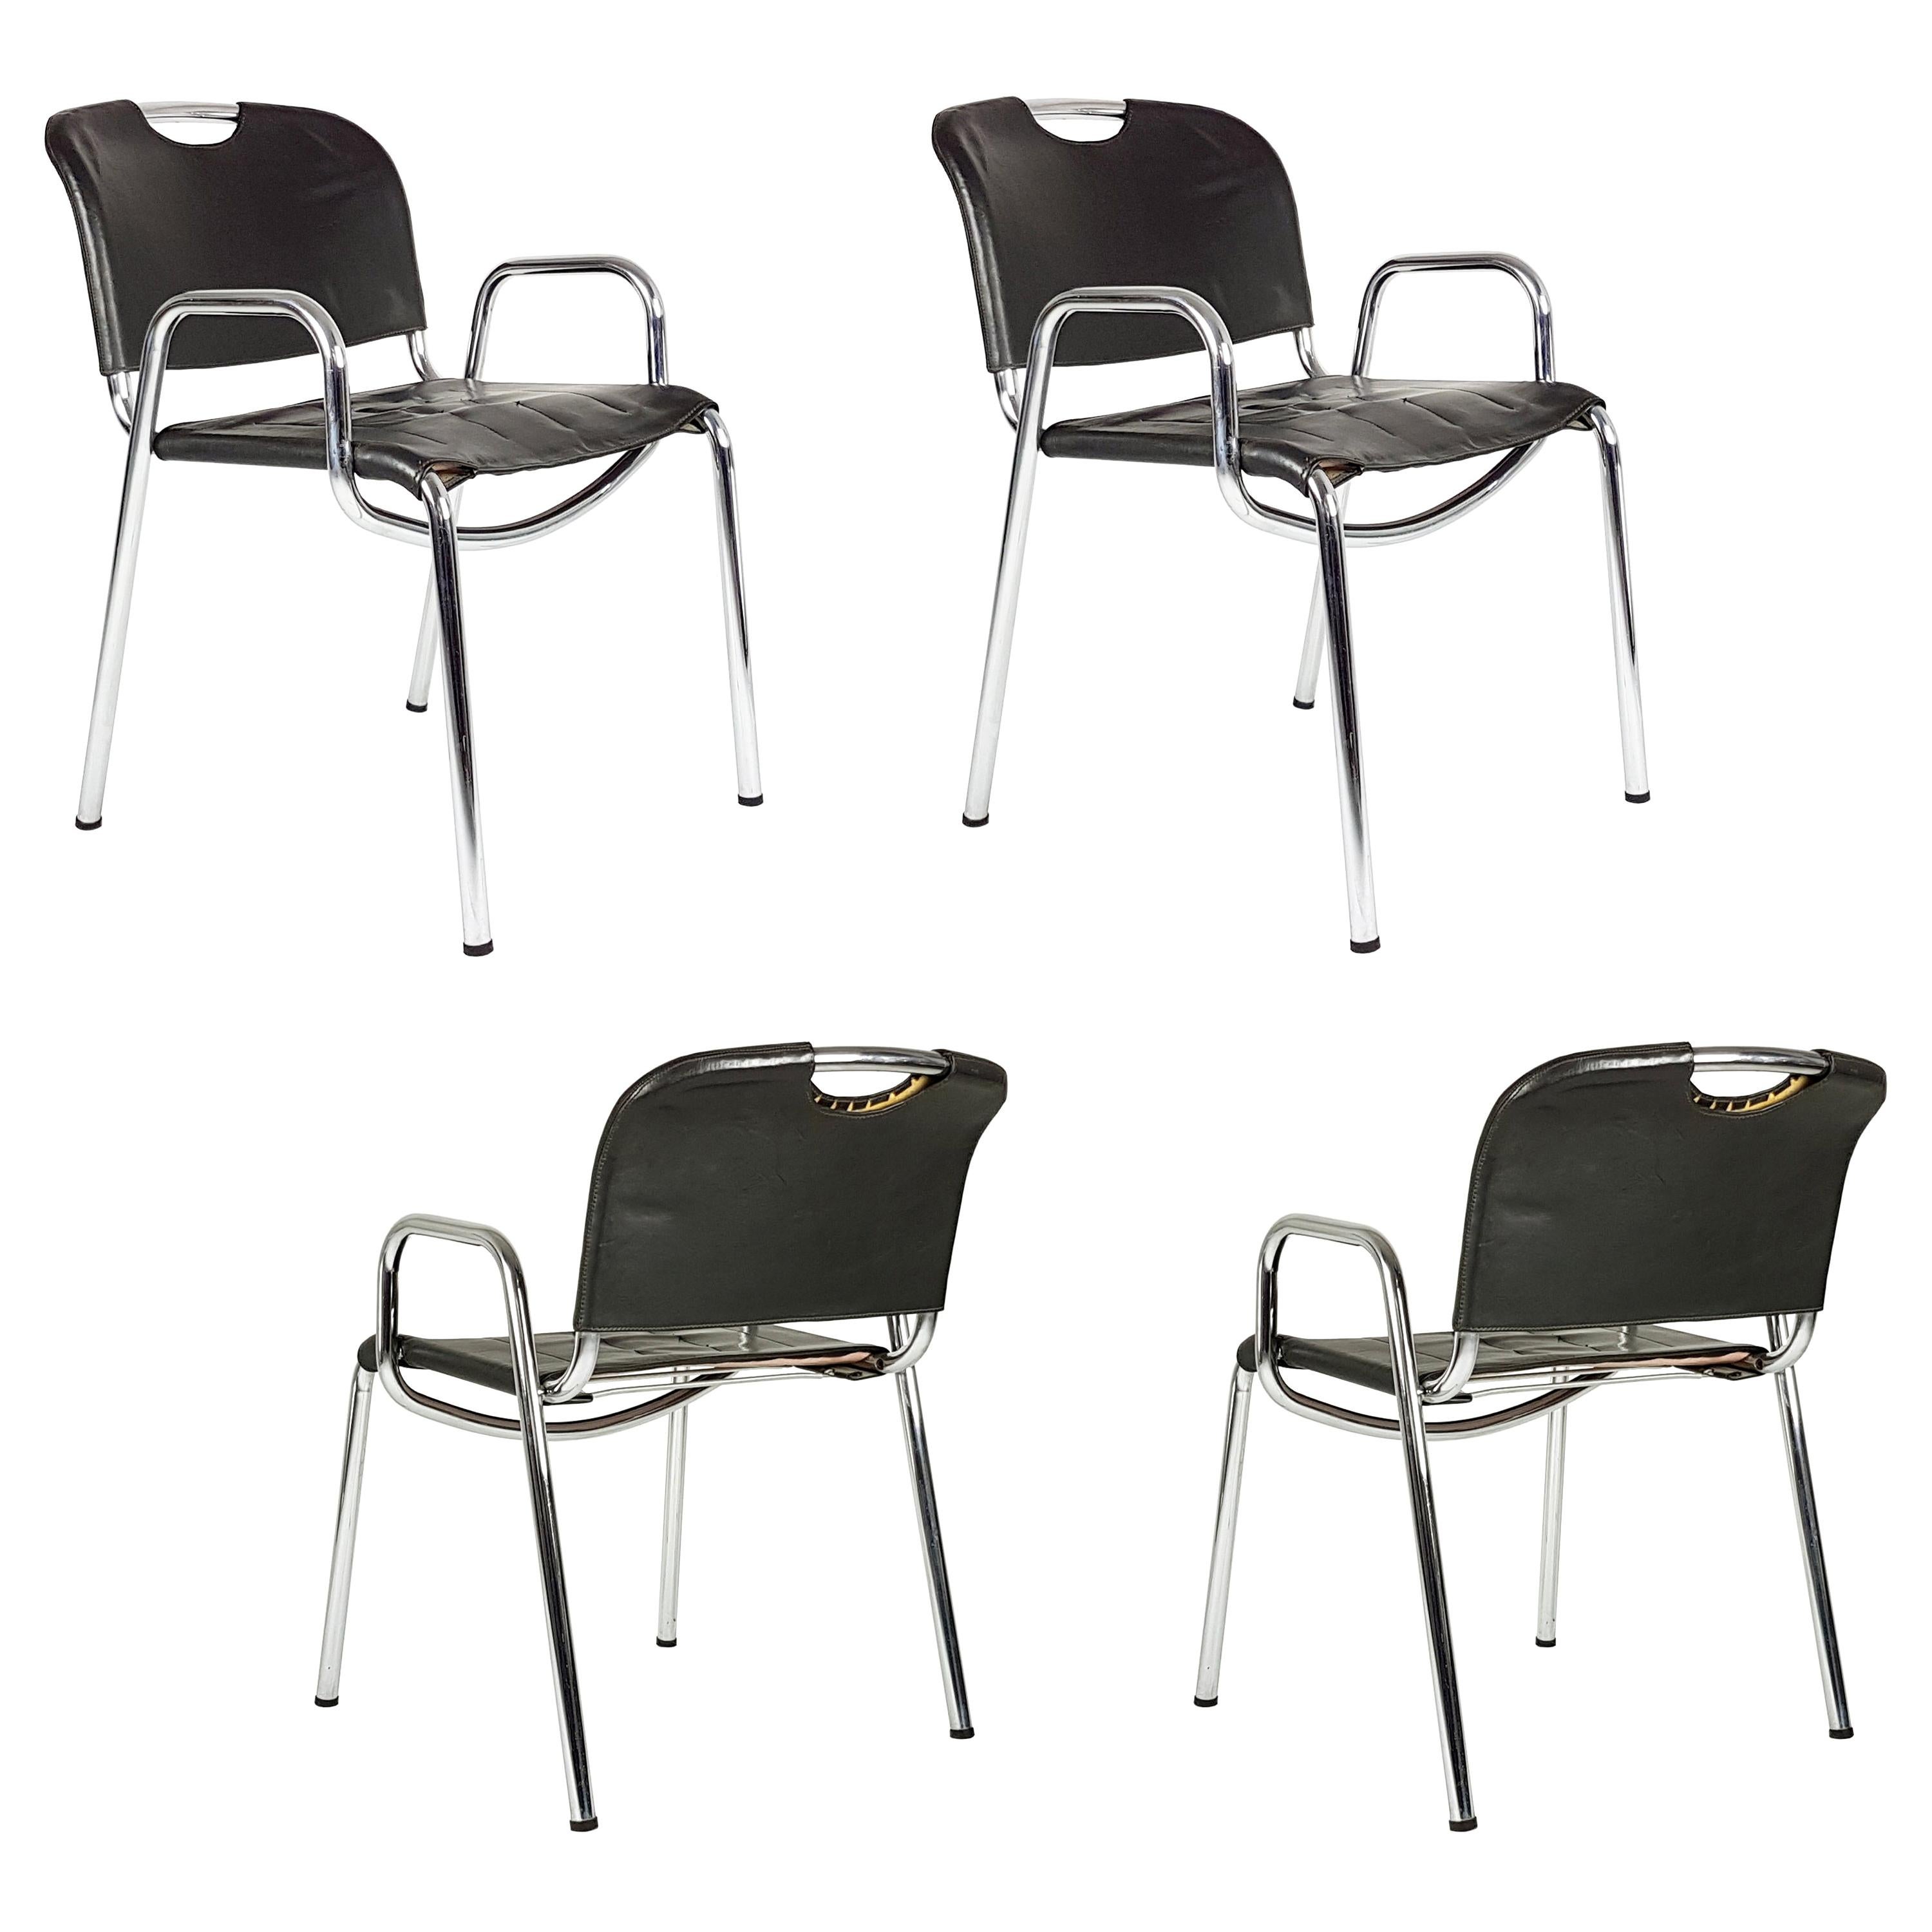 Metal, Brown Leather Castiglietta Chairs by A. Castiglioni for Zanotta, Set of 4 For Sale